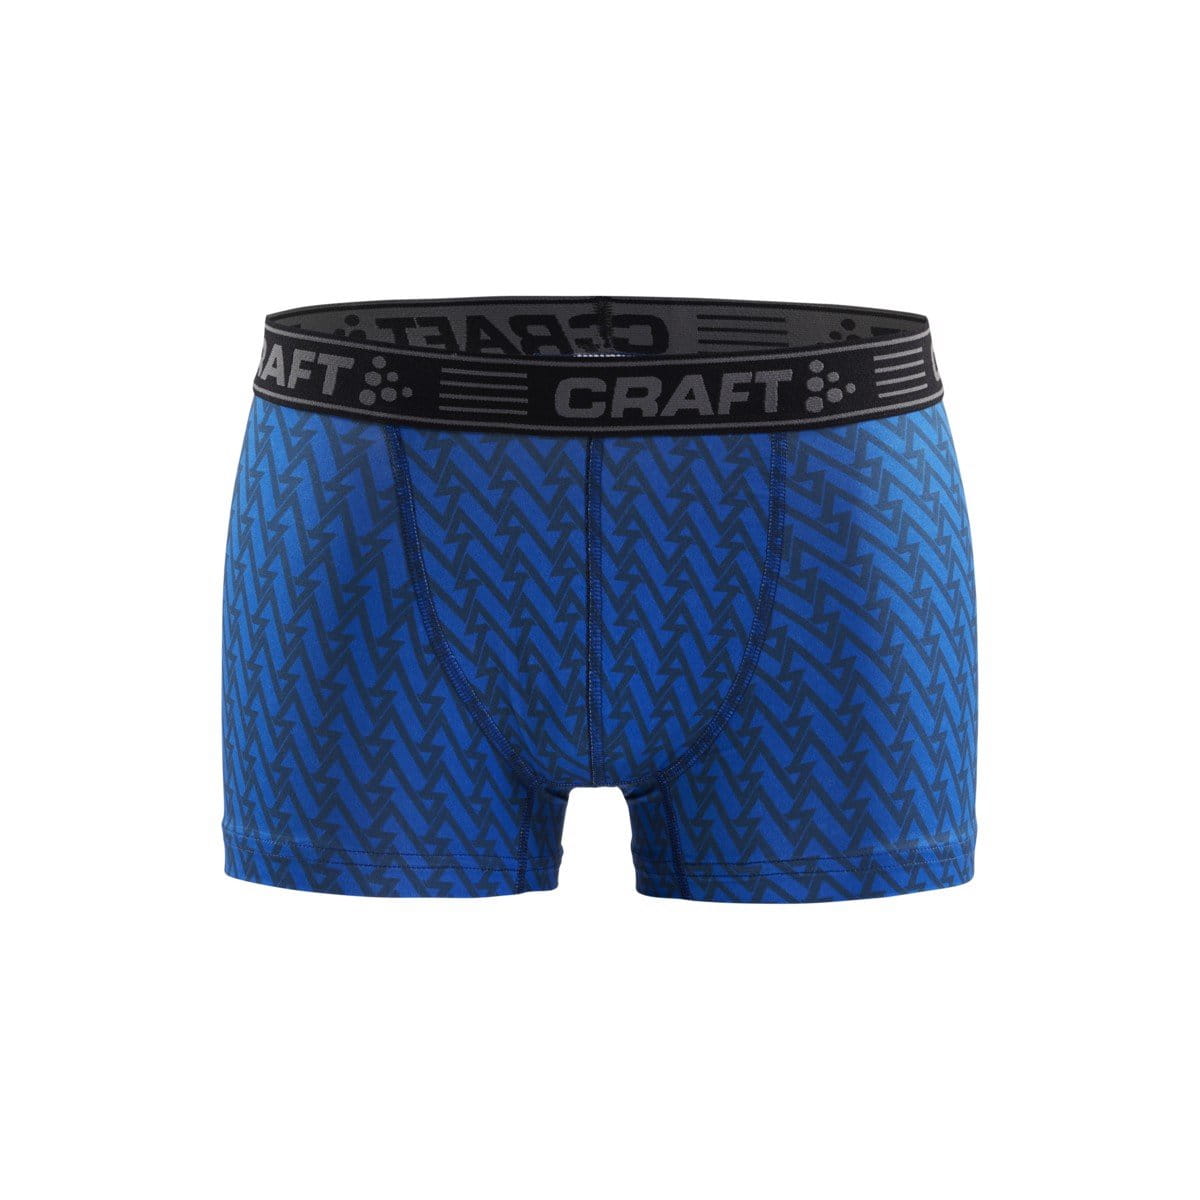 Pánska funkčná spodná bielizeň Craft Boxerky Greatness 3" modrá s černou